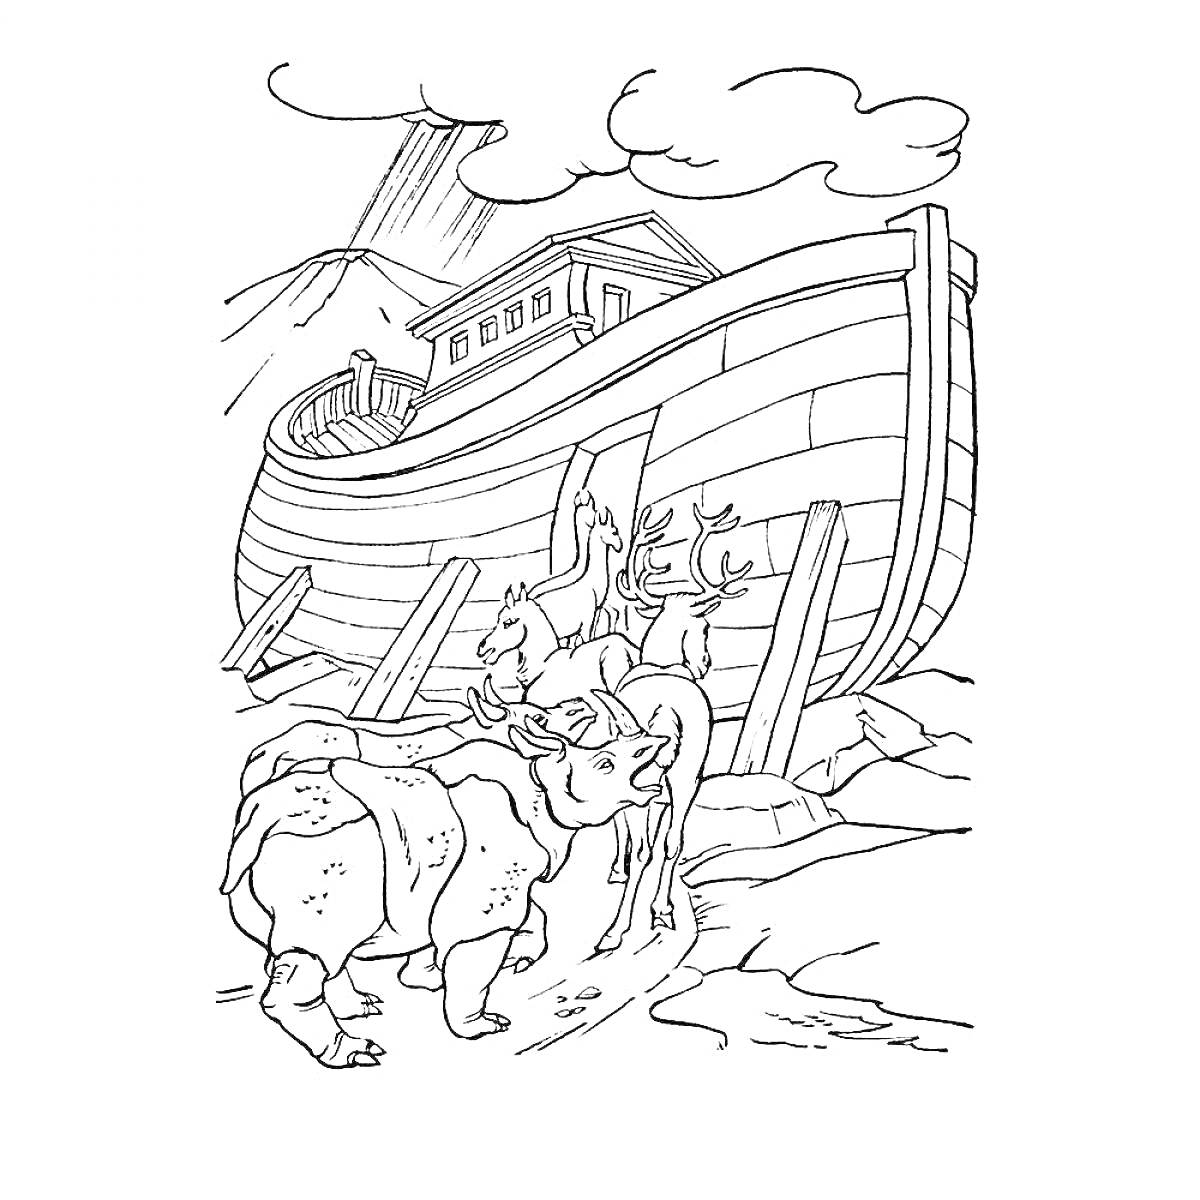 Раскраска Ной и его ковчег, гора, облака, разные животные перед ковчегом, лошадь, бык, медведь